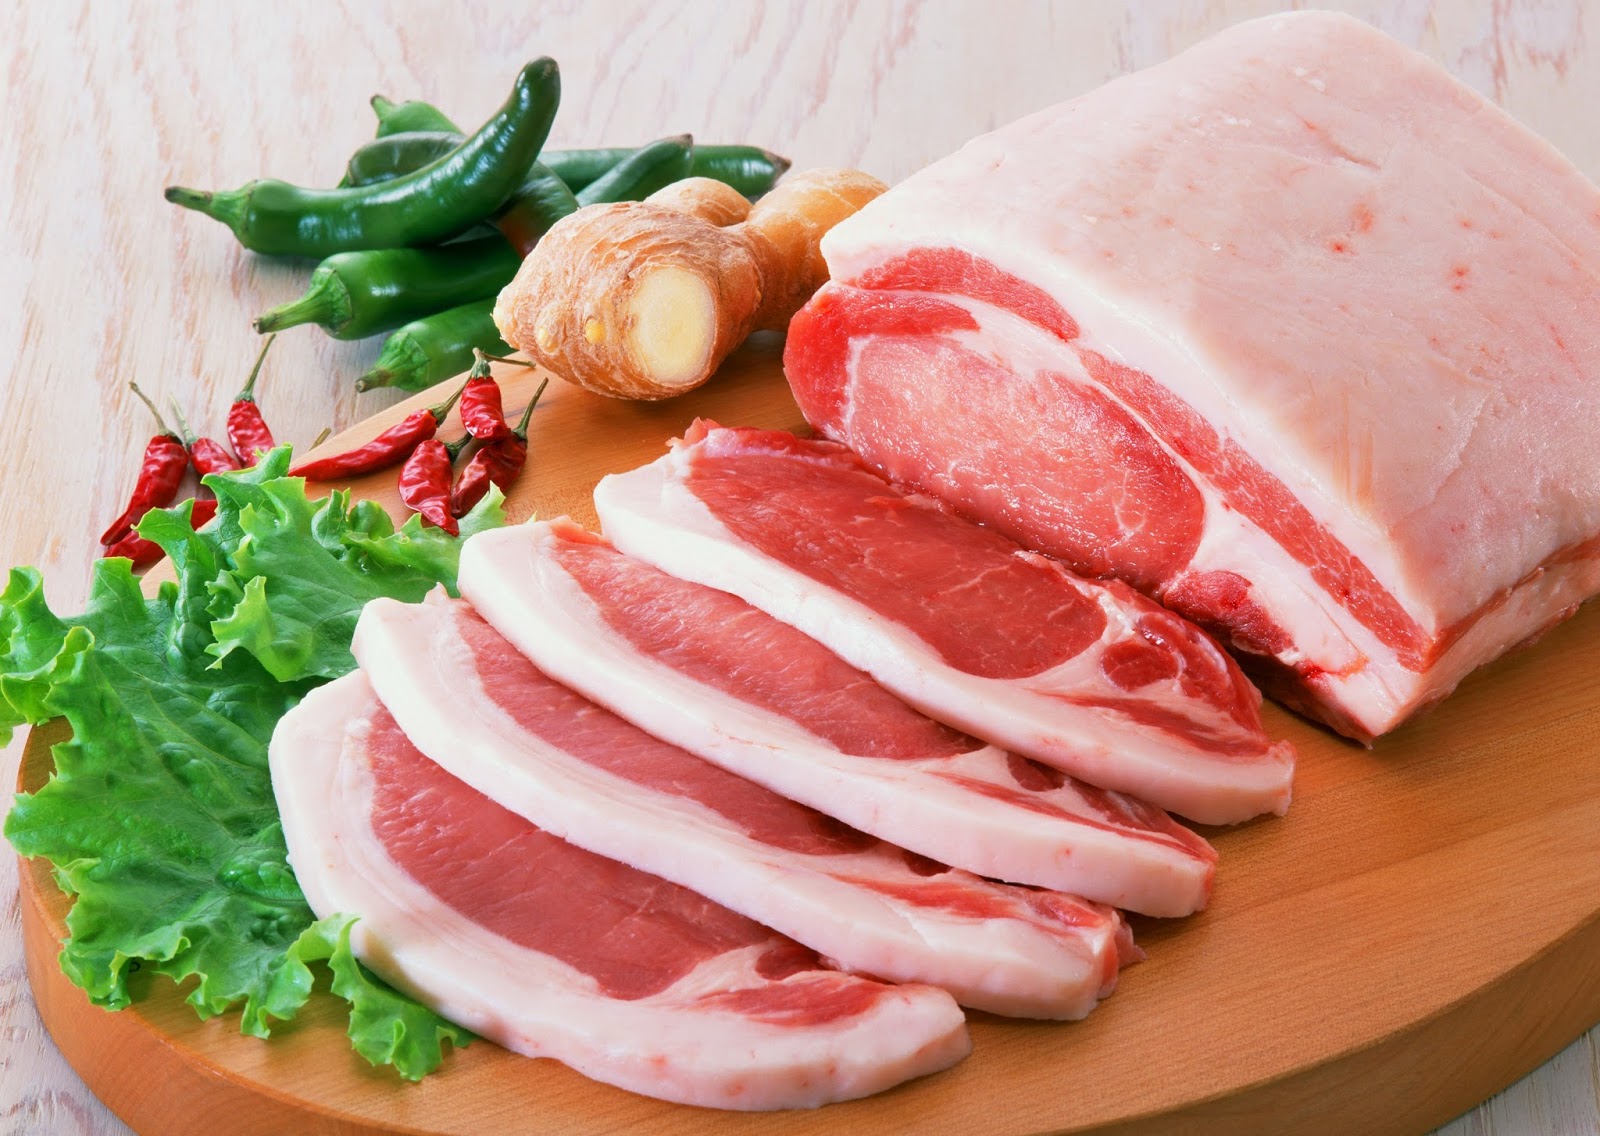 Πότε είναι υγιεινό και πότε επικίνδυνο το κρέας; Δείτε εδώ χρήσιμες ερωτήσεις και απαντήσεις